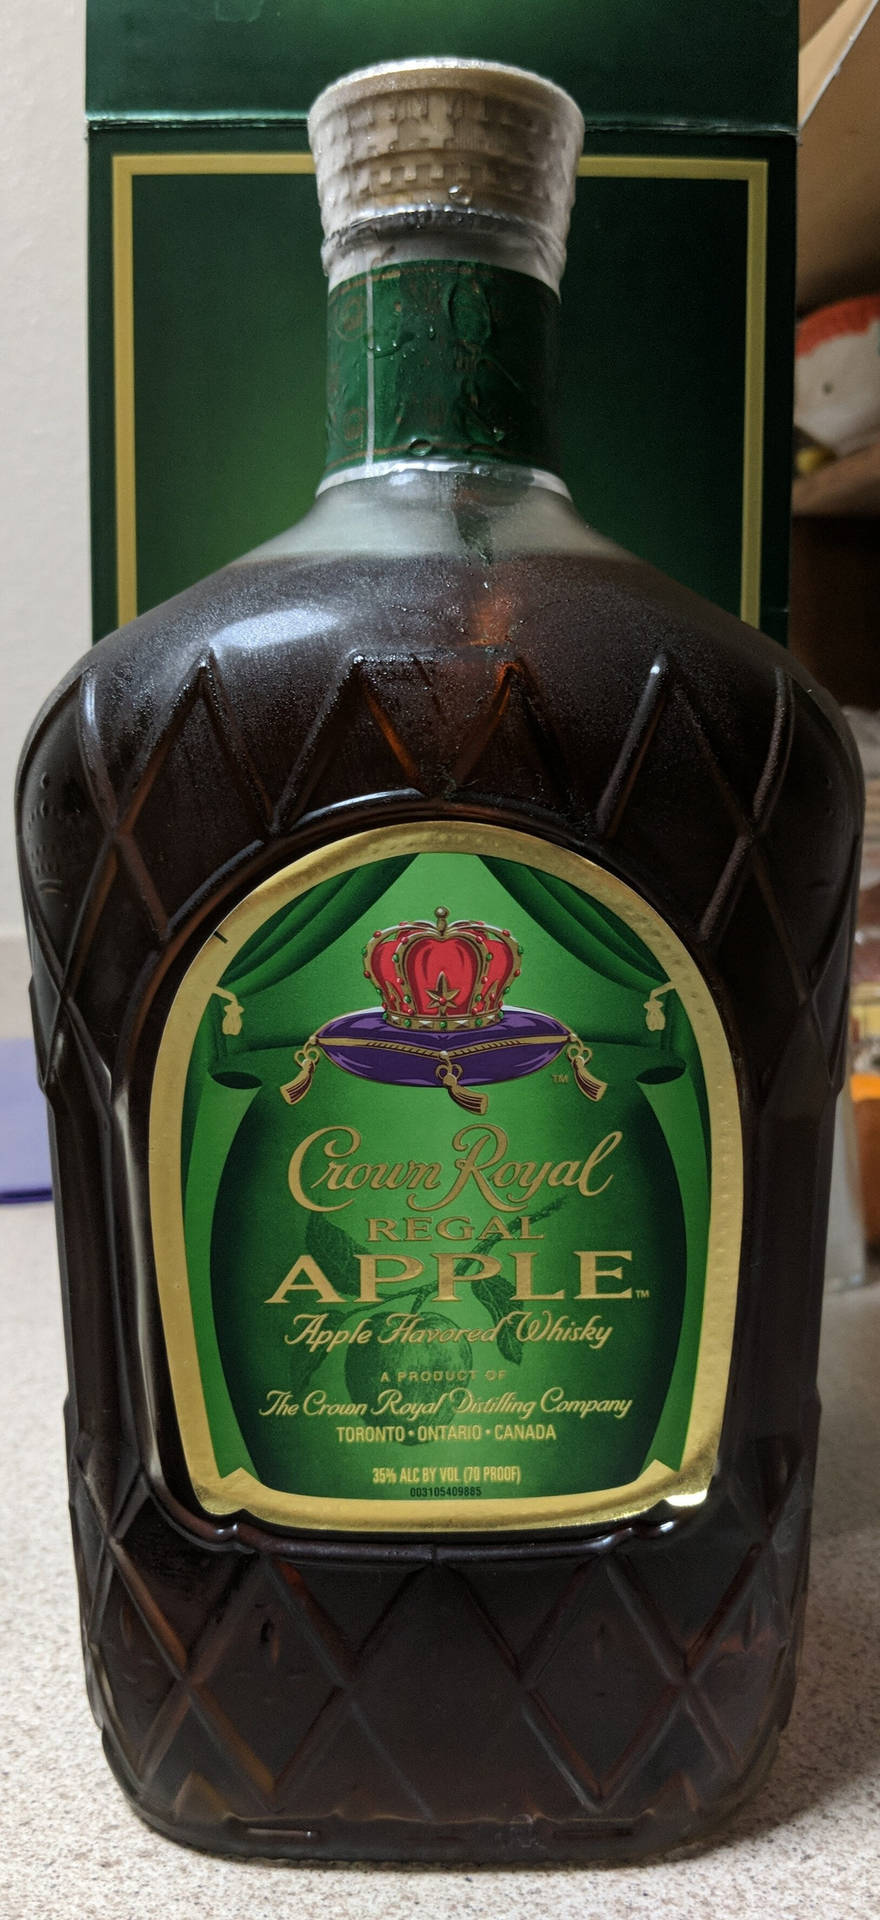 Königlicherwhisky Von Crown Royal Wallpaper